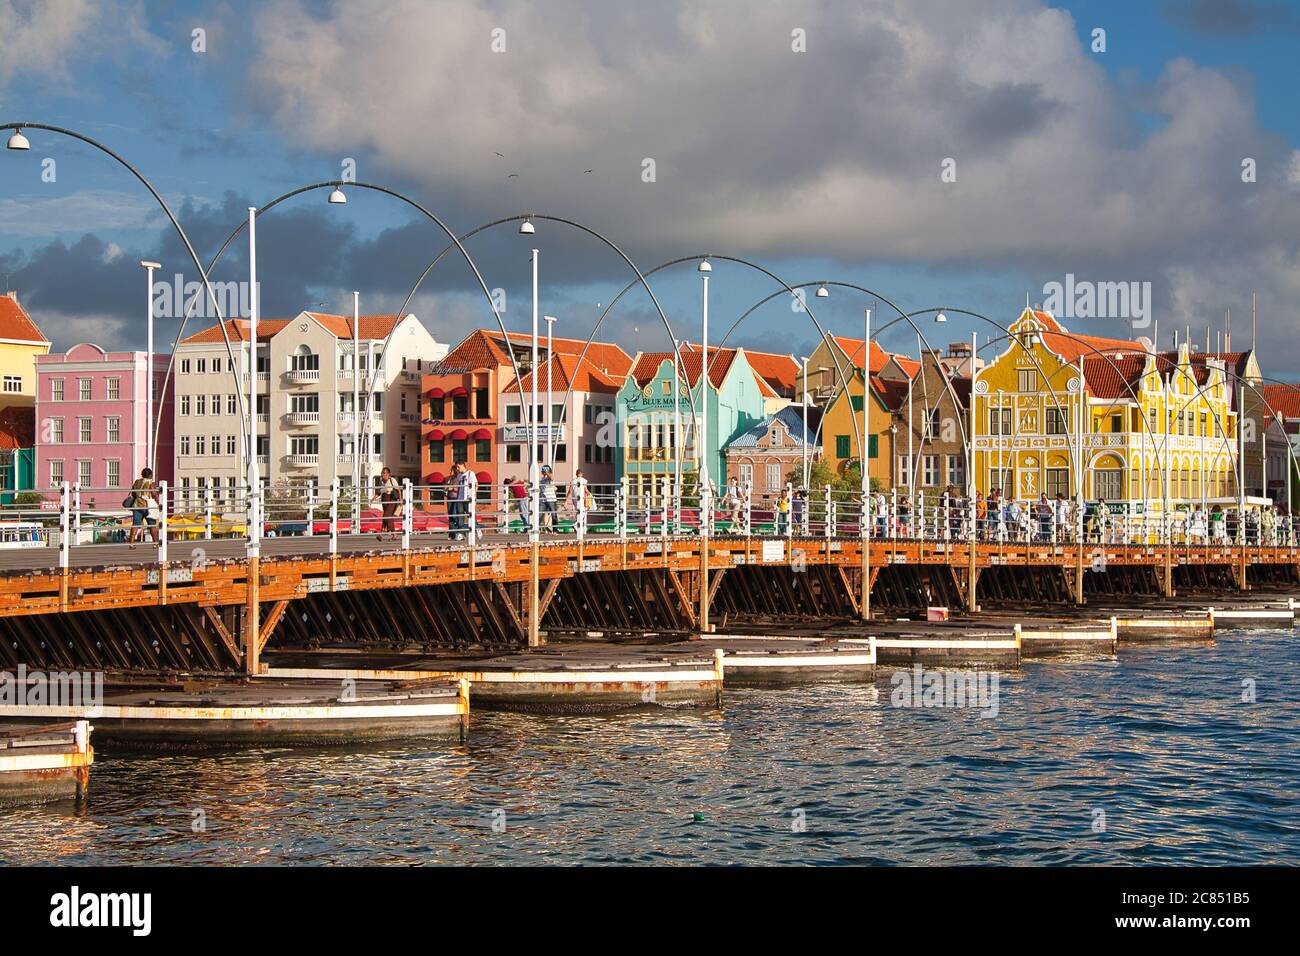 Menschen, die über Queen Emma Swing Bridge mit typisch holländischen Gebäuden im Hintergrund, Willemstat, Curacao, Karibik, West Indies Stockfoto